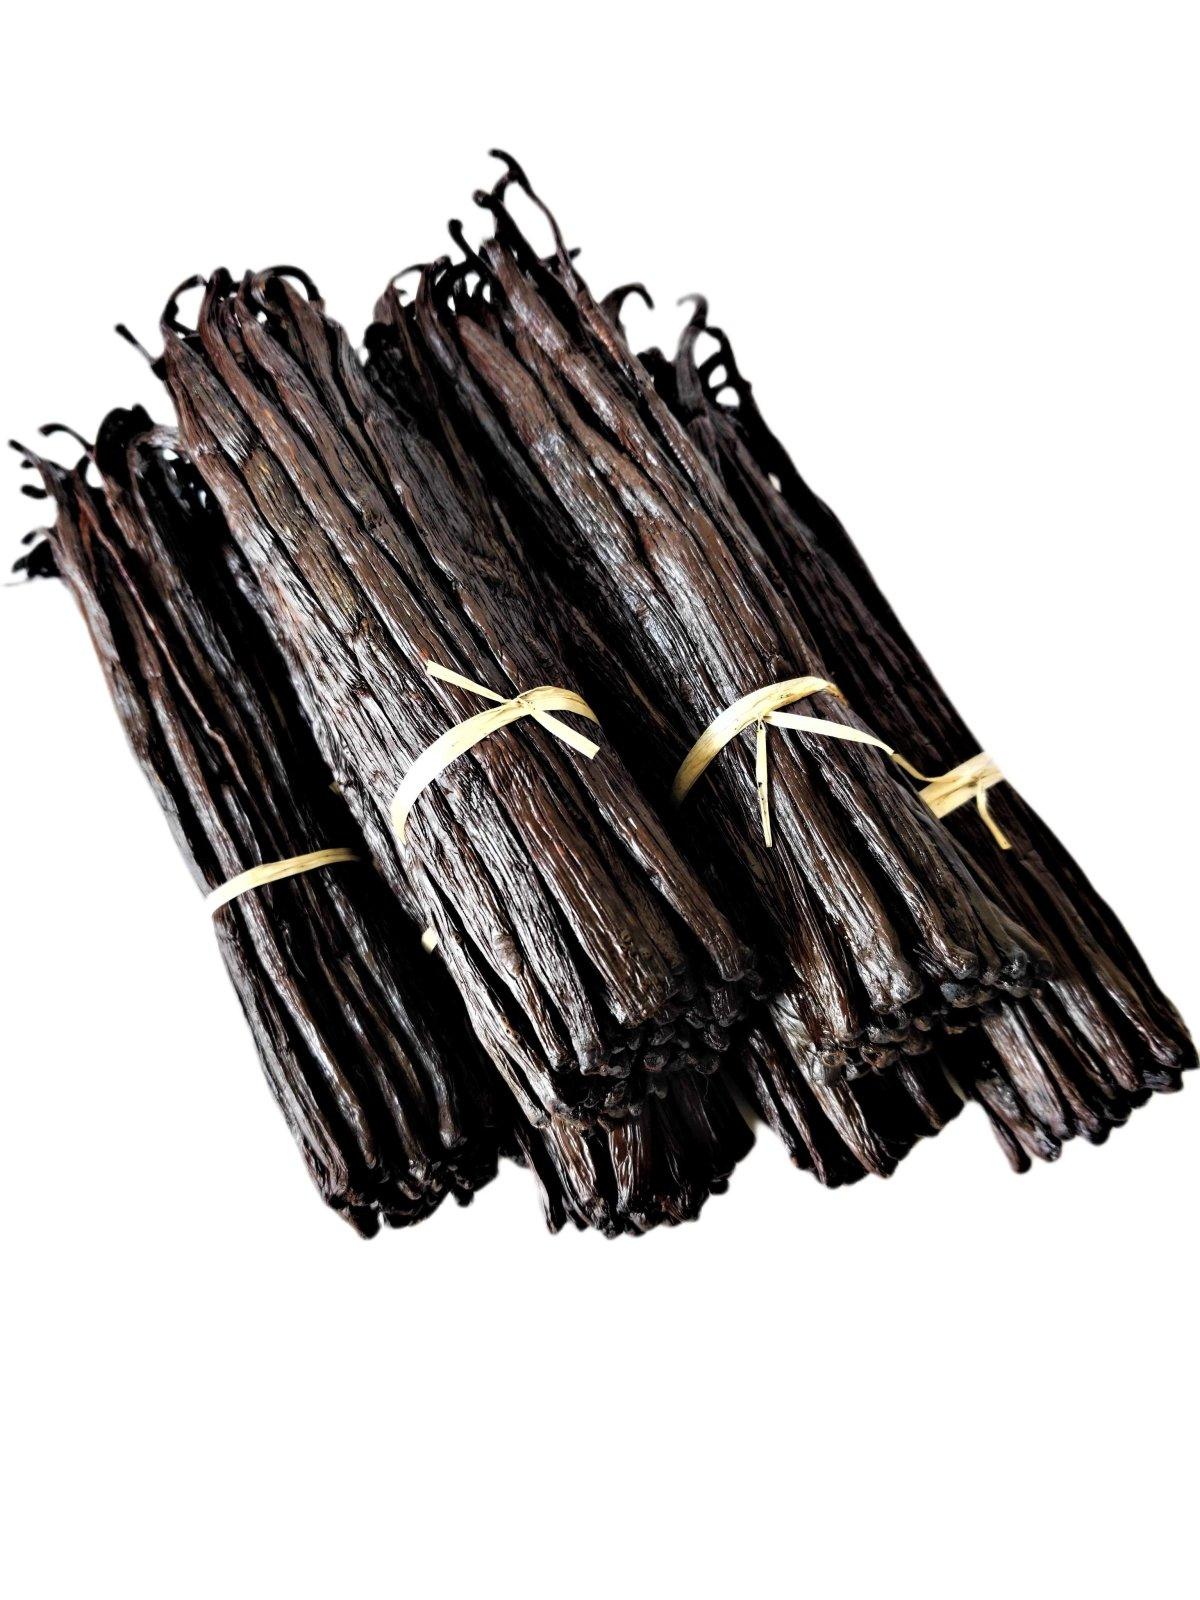 Madagascar Bourbon Grade-A Gourmet Vanilla Beans<br>For Extract And Baking<BR>1oz, 3oz, 5oz, 10oz, 20oz, 30oz - Spice-Land Wholesale